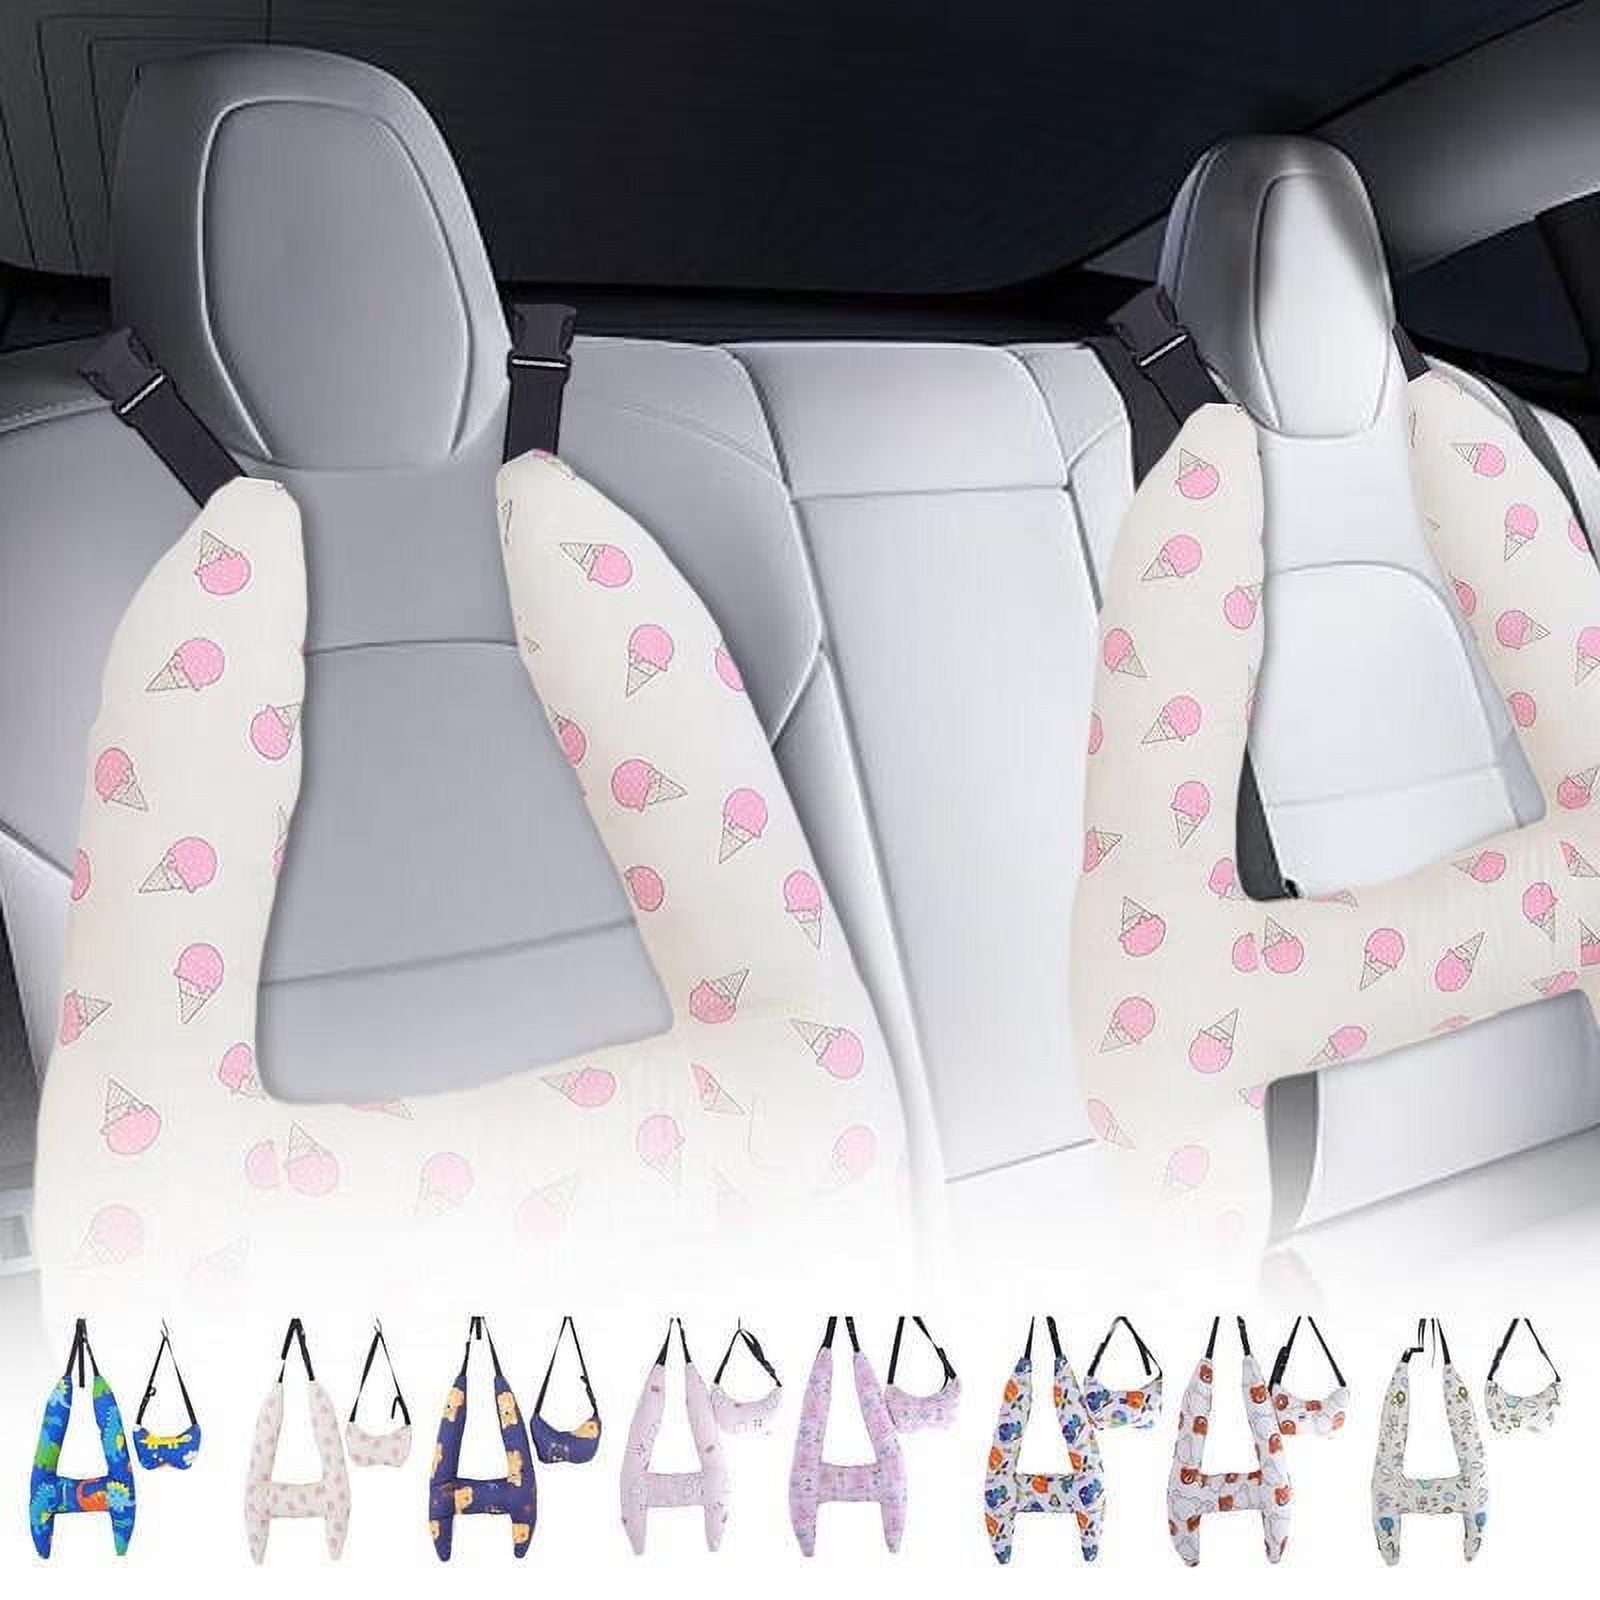 HeadUp Pillow - Car Seat Pillow for Children – HeadUp Pillows